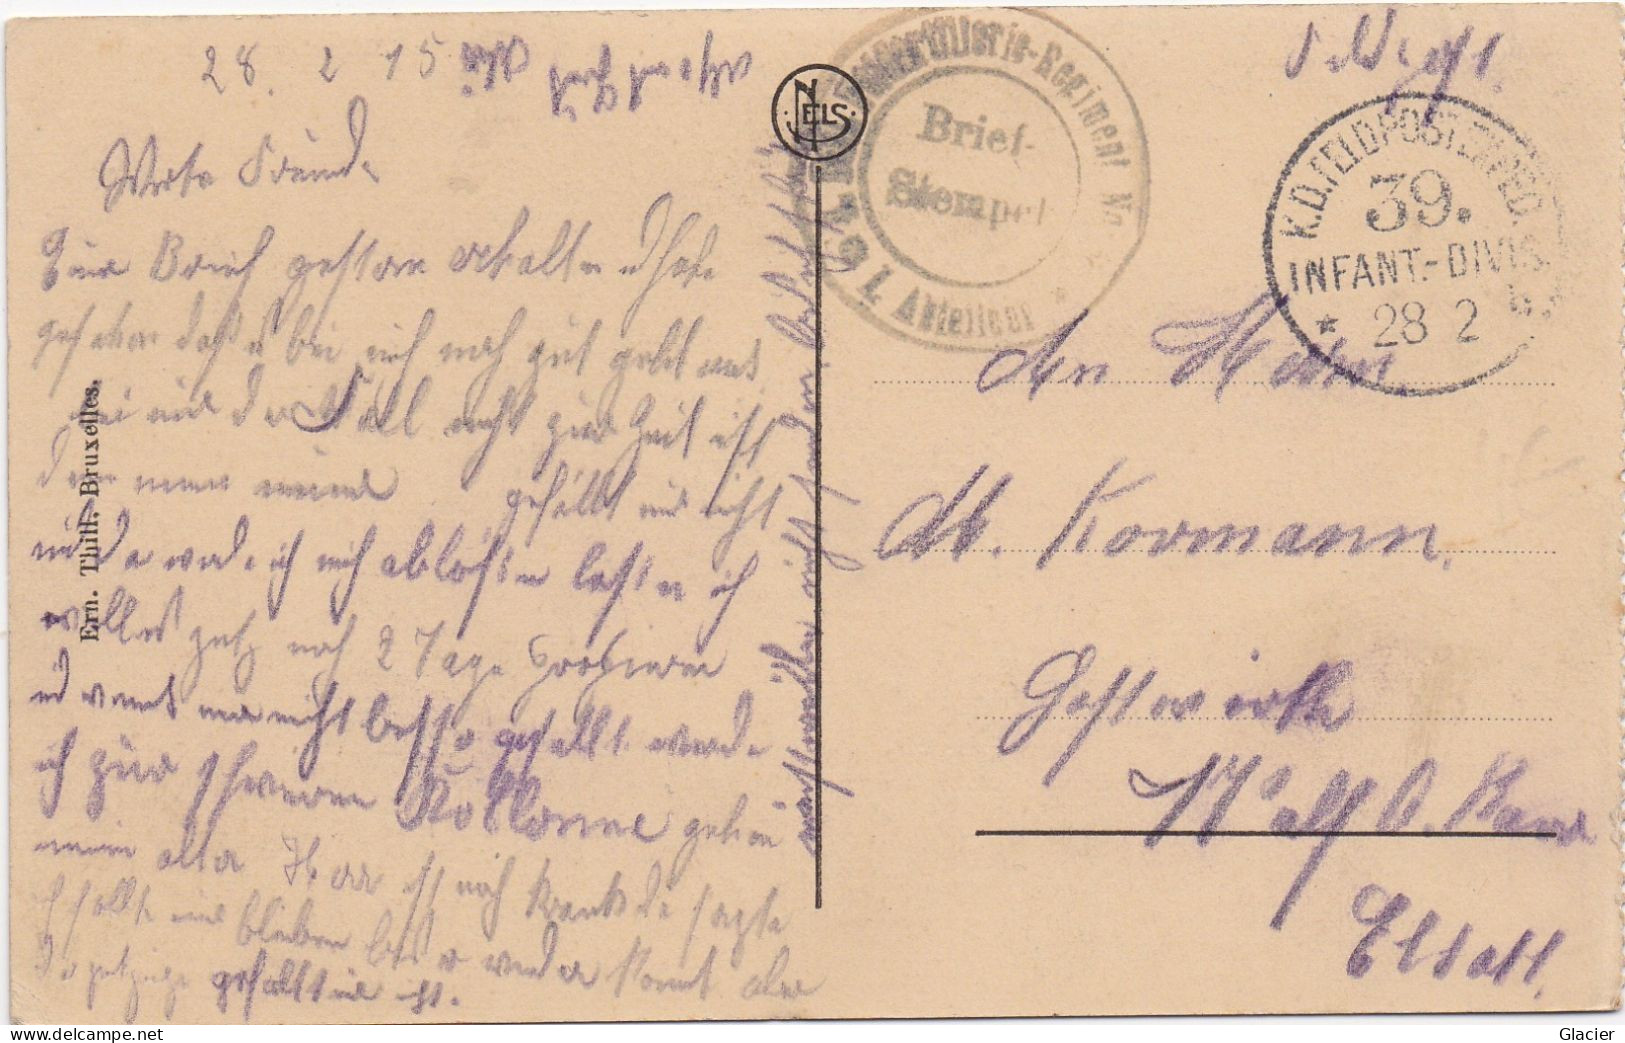 Deutsche Feldpost 1 Weltkrieg - 39 Inf. Div. 28-2-1915 - Karte Ostende - Feldpost (postage Free)